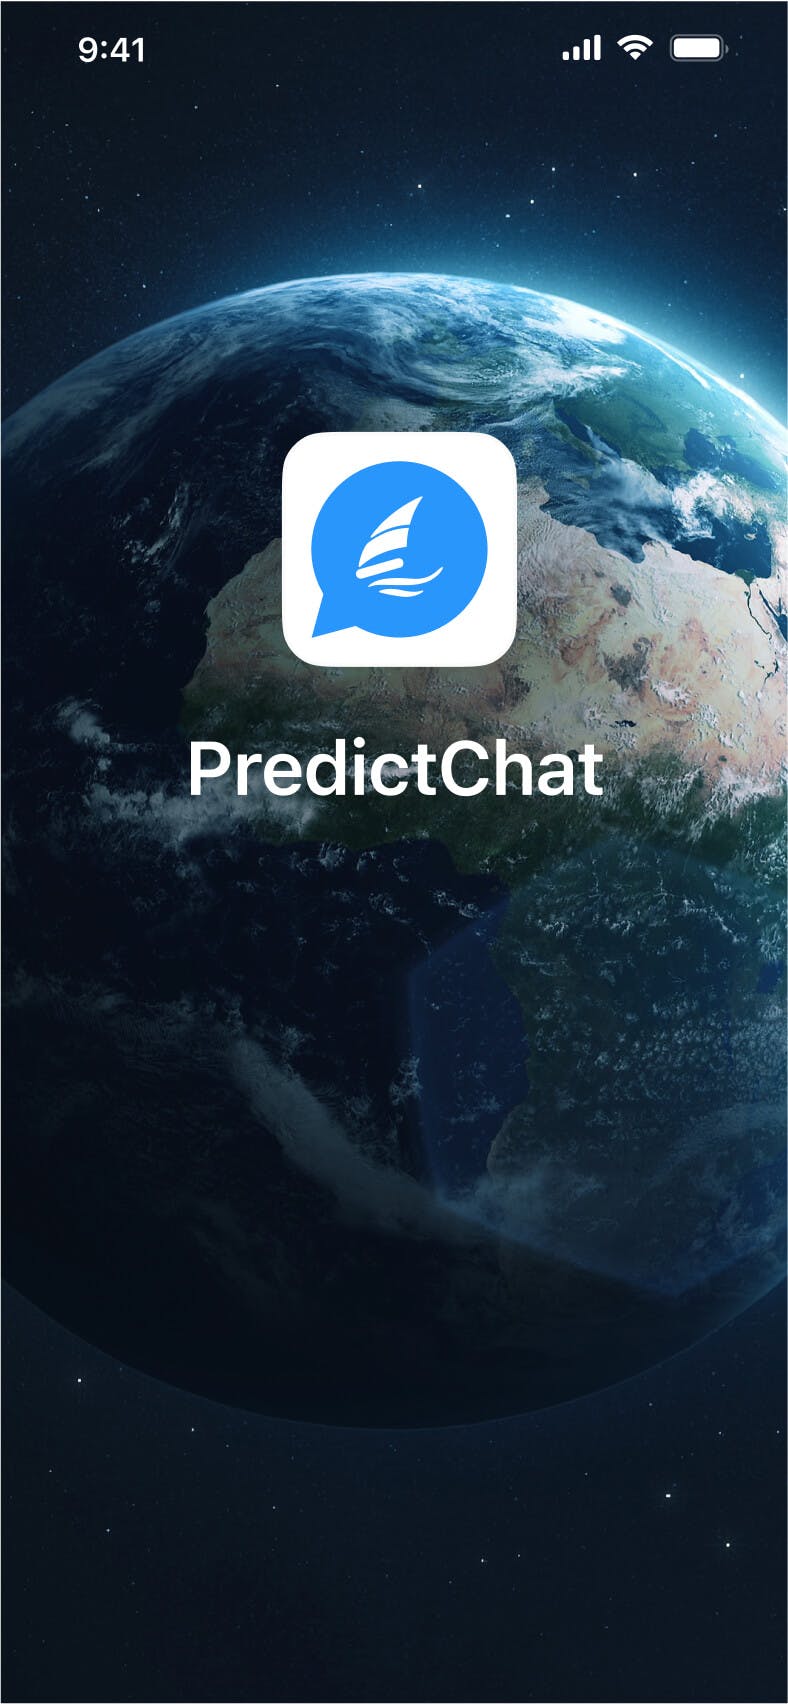 ¿Por qué utilizar el servicio de SMS PredictChat?